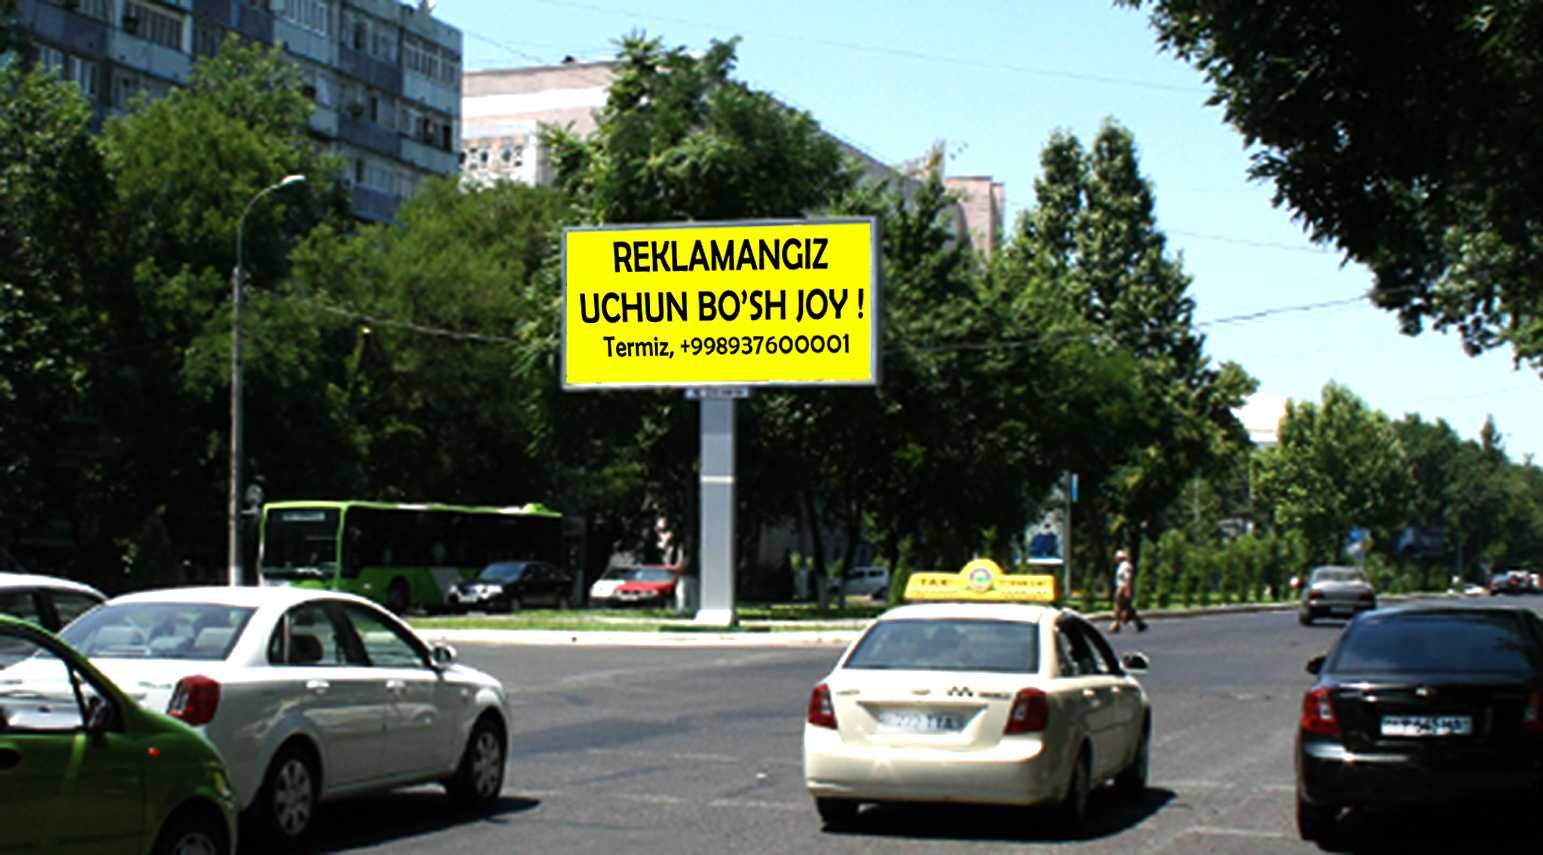 Ижара билбордларда реклама Реклама на Билбордах Bilbordlarda reklama